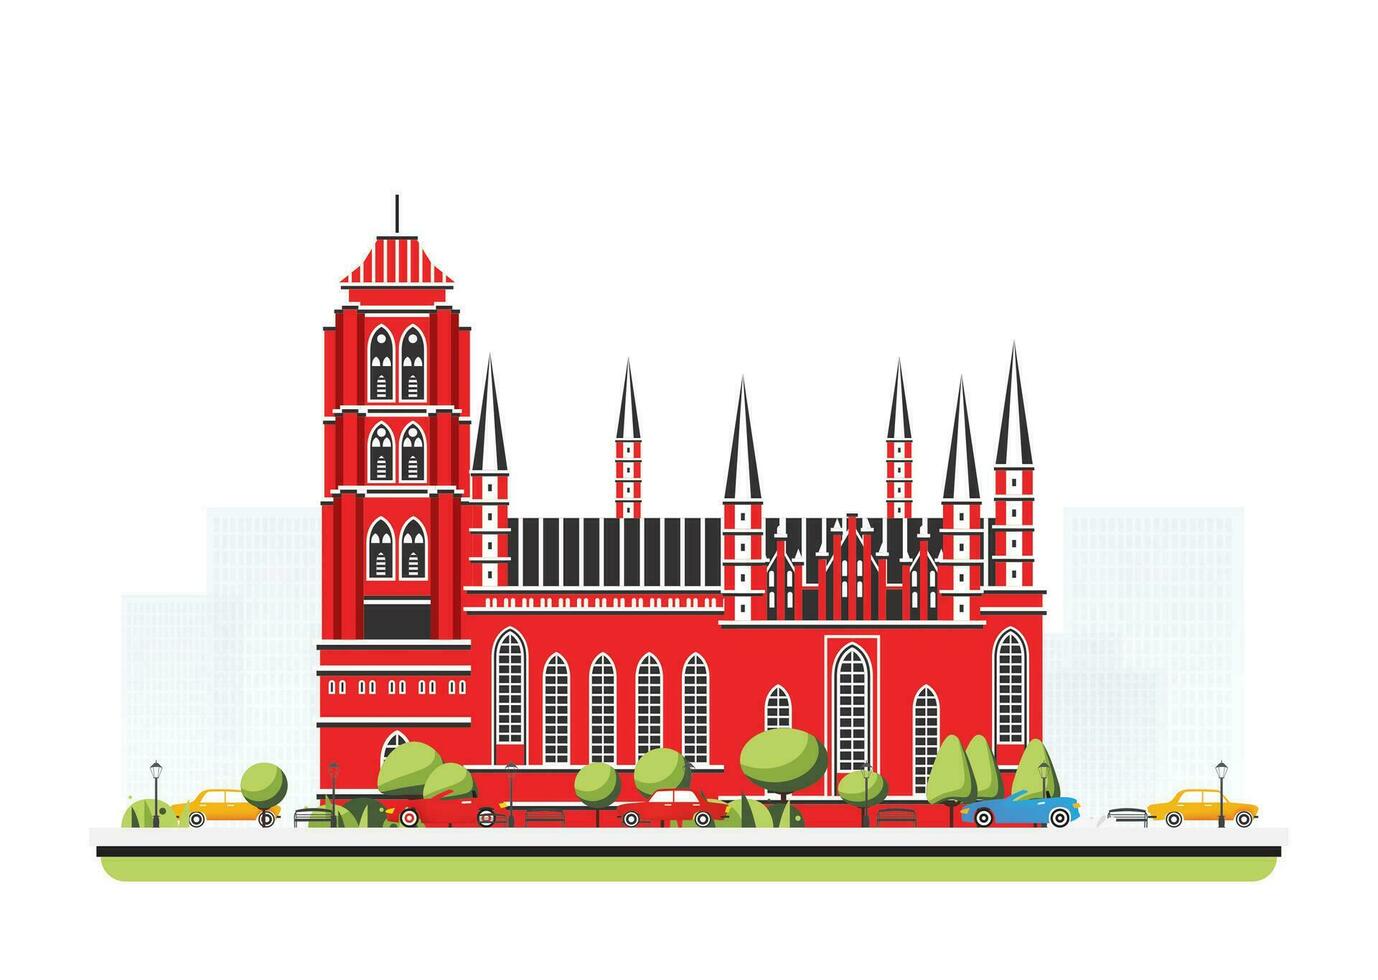 gammal röd katedral byggnad i platt stil med träd och bilar. stad scen isolerat på vit bakgrund. urban arkitektur. medeltida kyrka. vektor